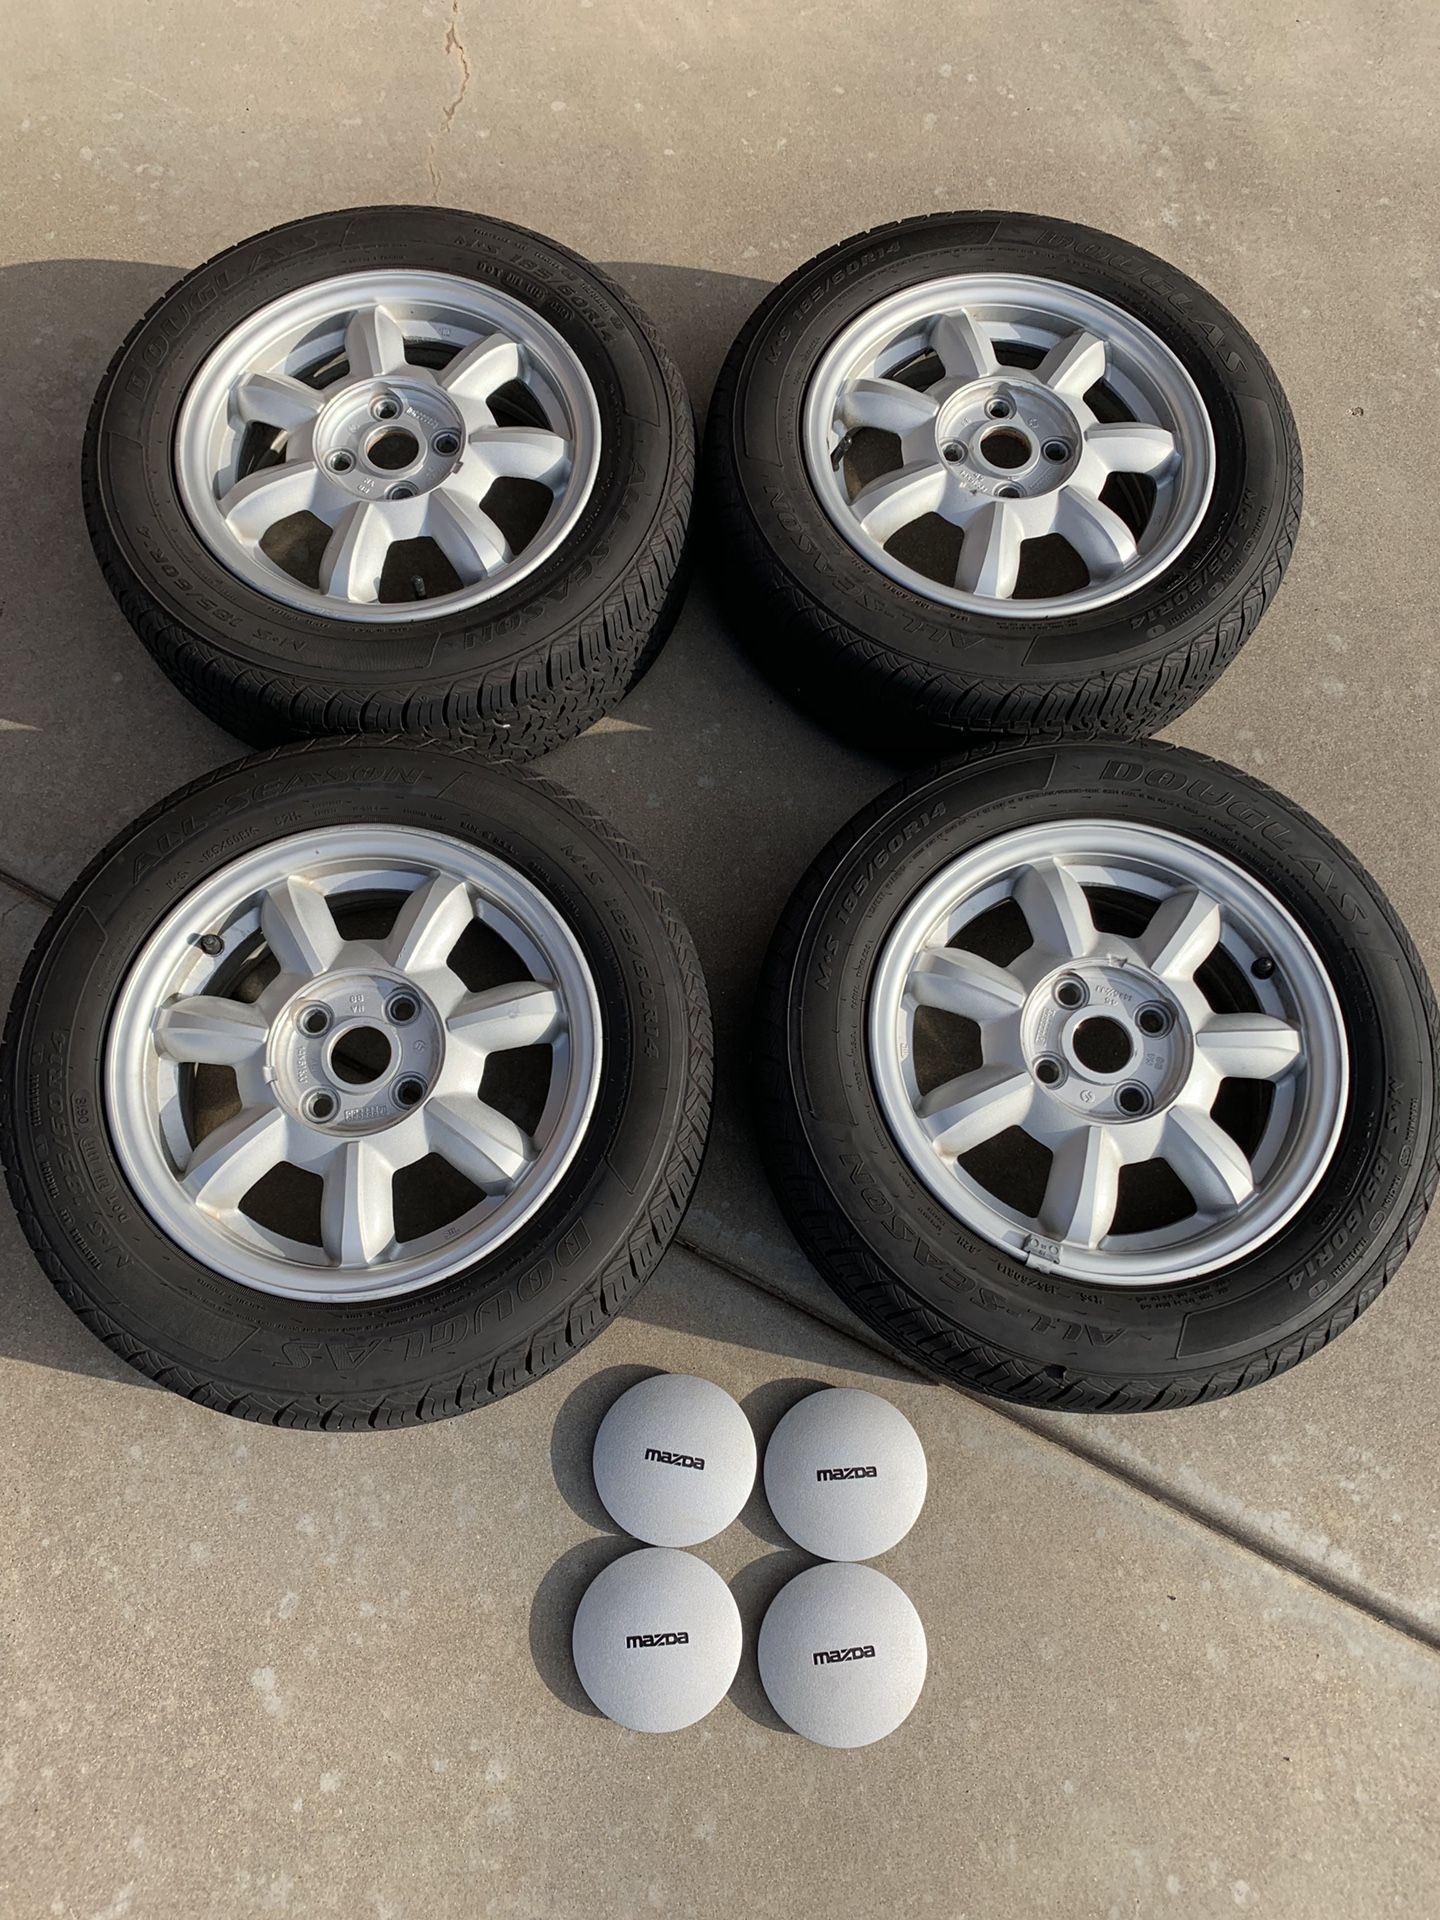 OEM daisy wheels from a 1992 Mazda Miata